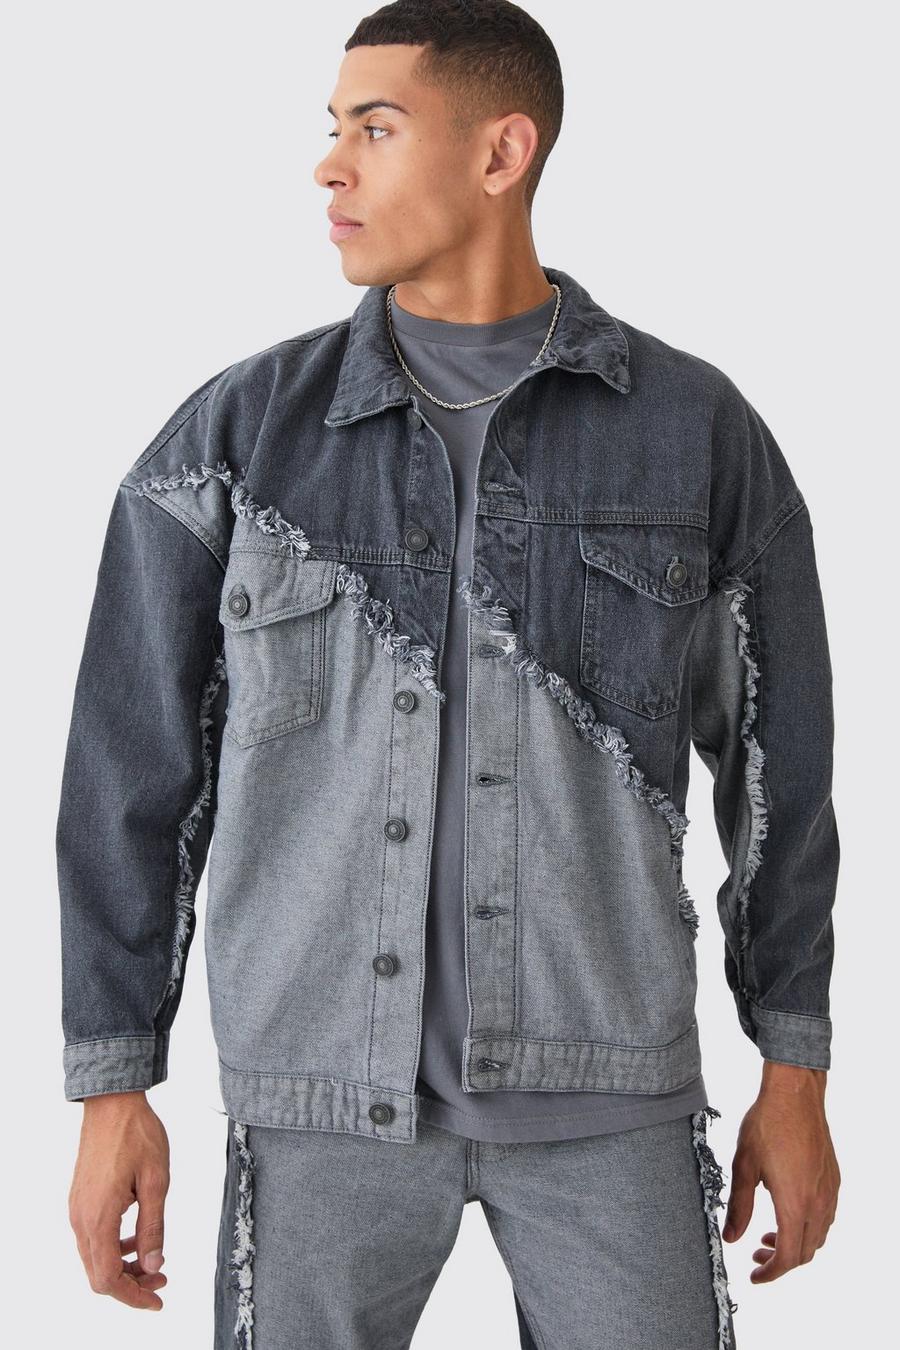 Gespleißte Oversize Jeansjacke mit ausgefranstem Saum, Mid grey grau